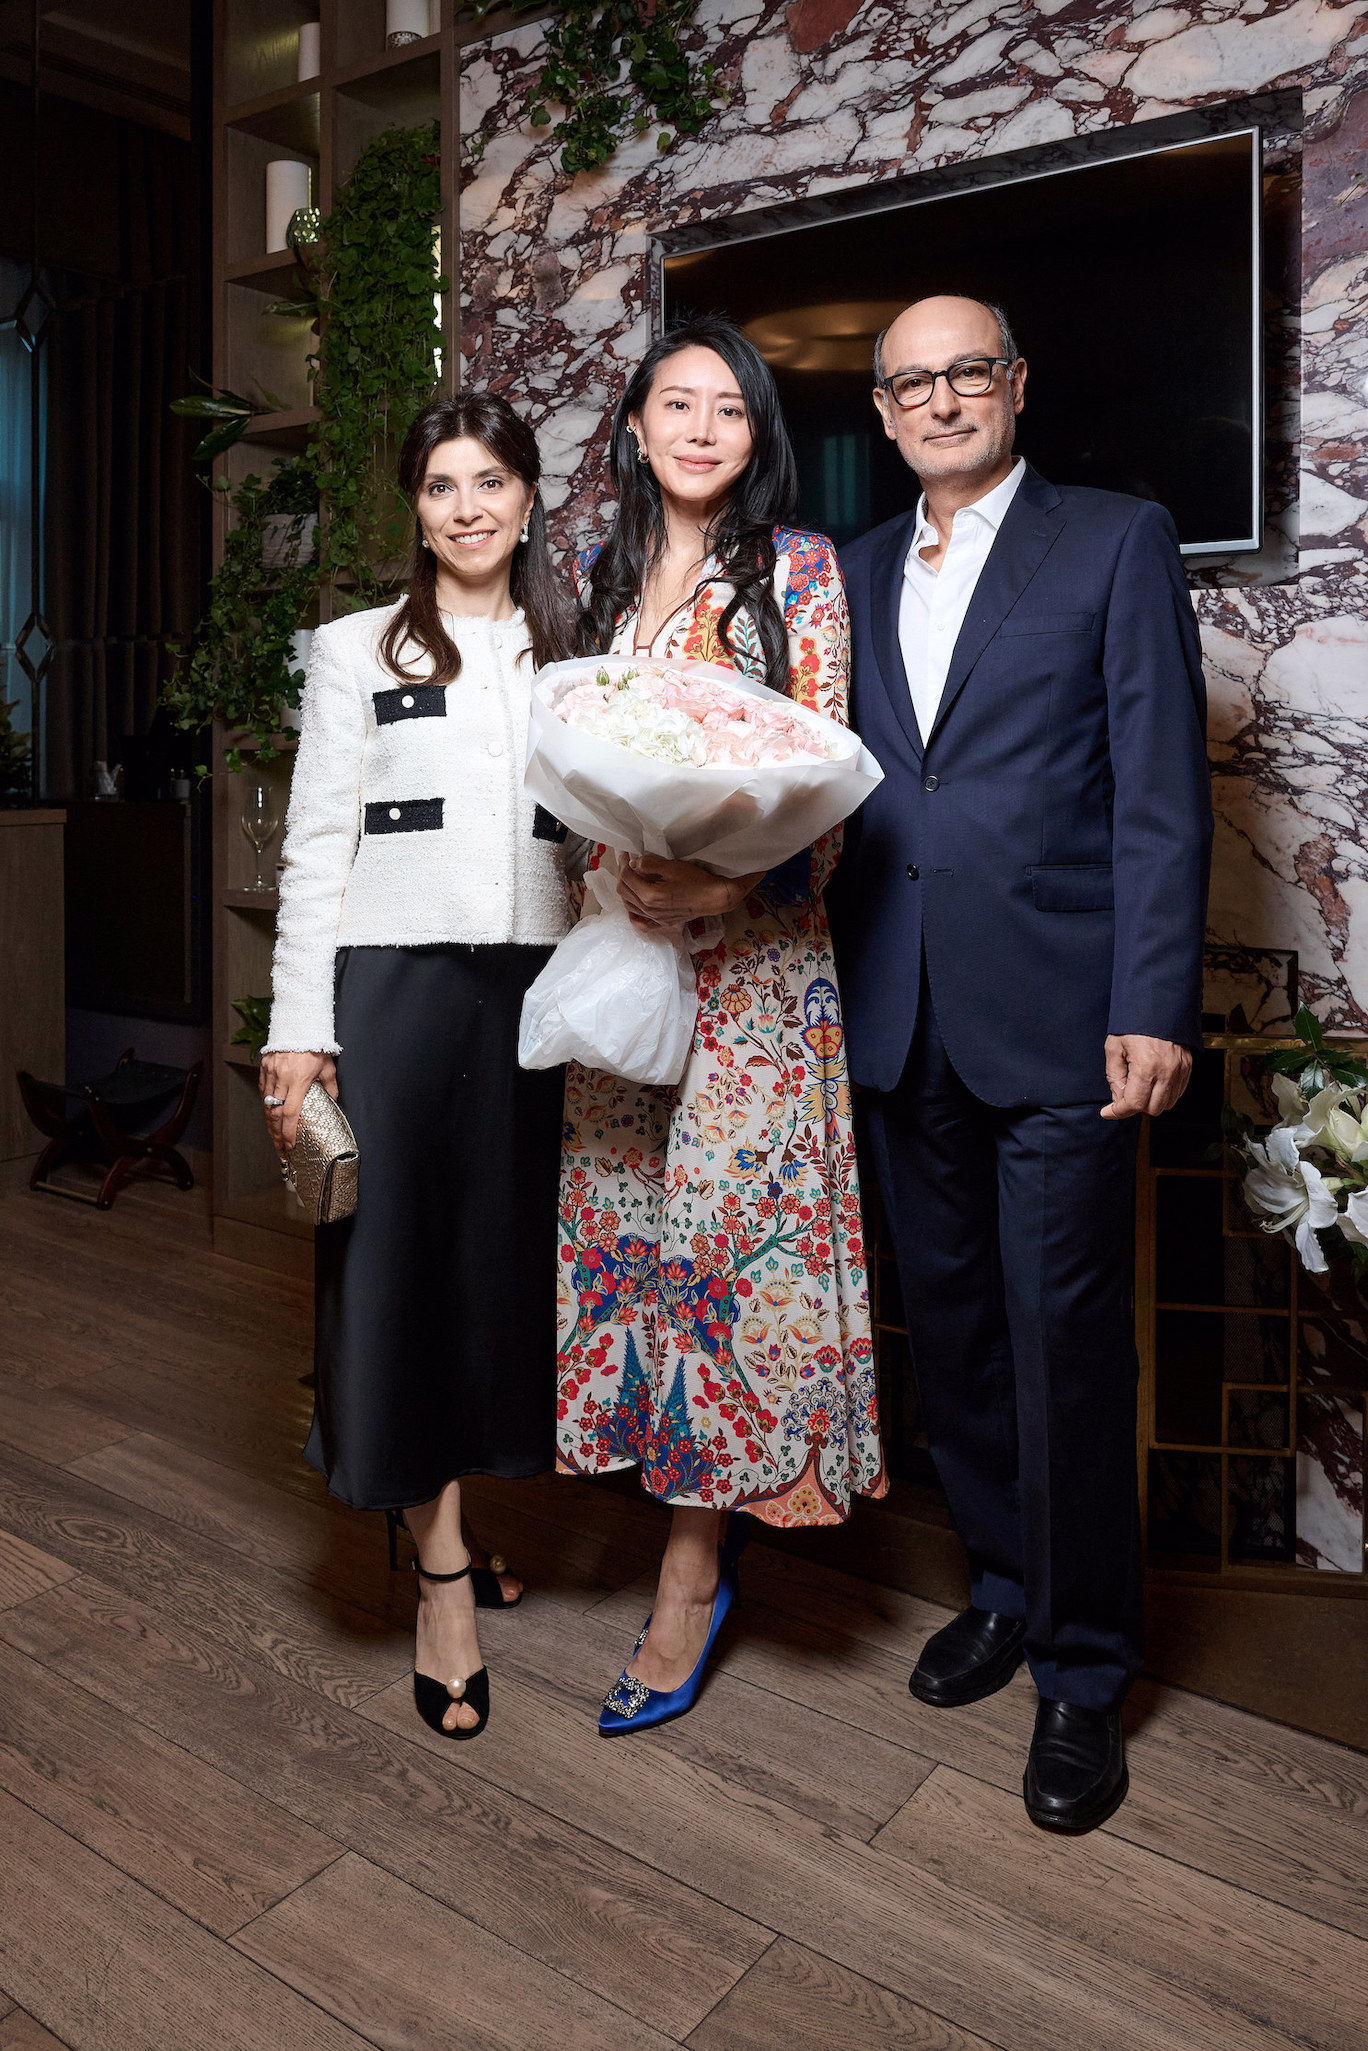  Элизабет Льё основательница бренда Maison de l’Asie, Алекс Геллер со-учредитель компании UPARFUME